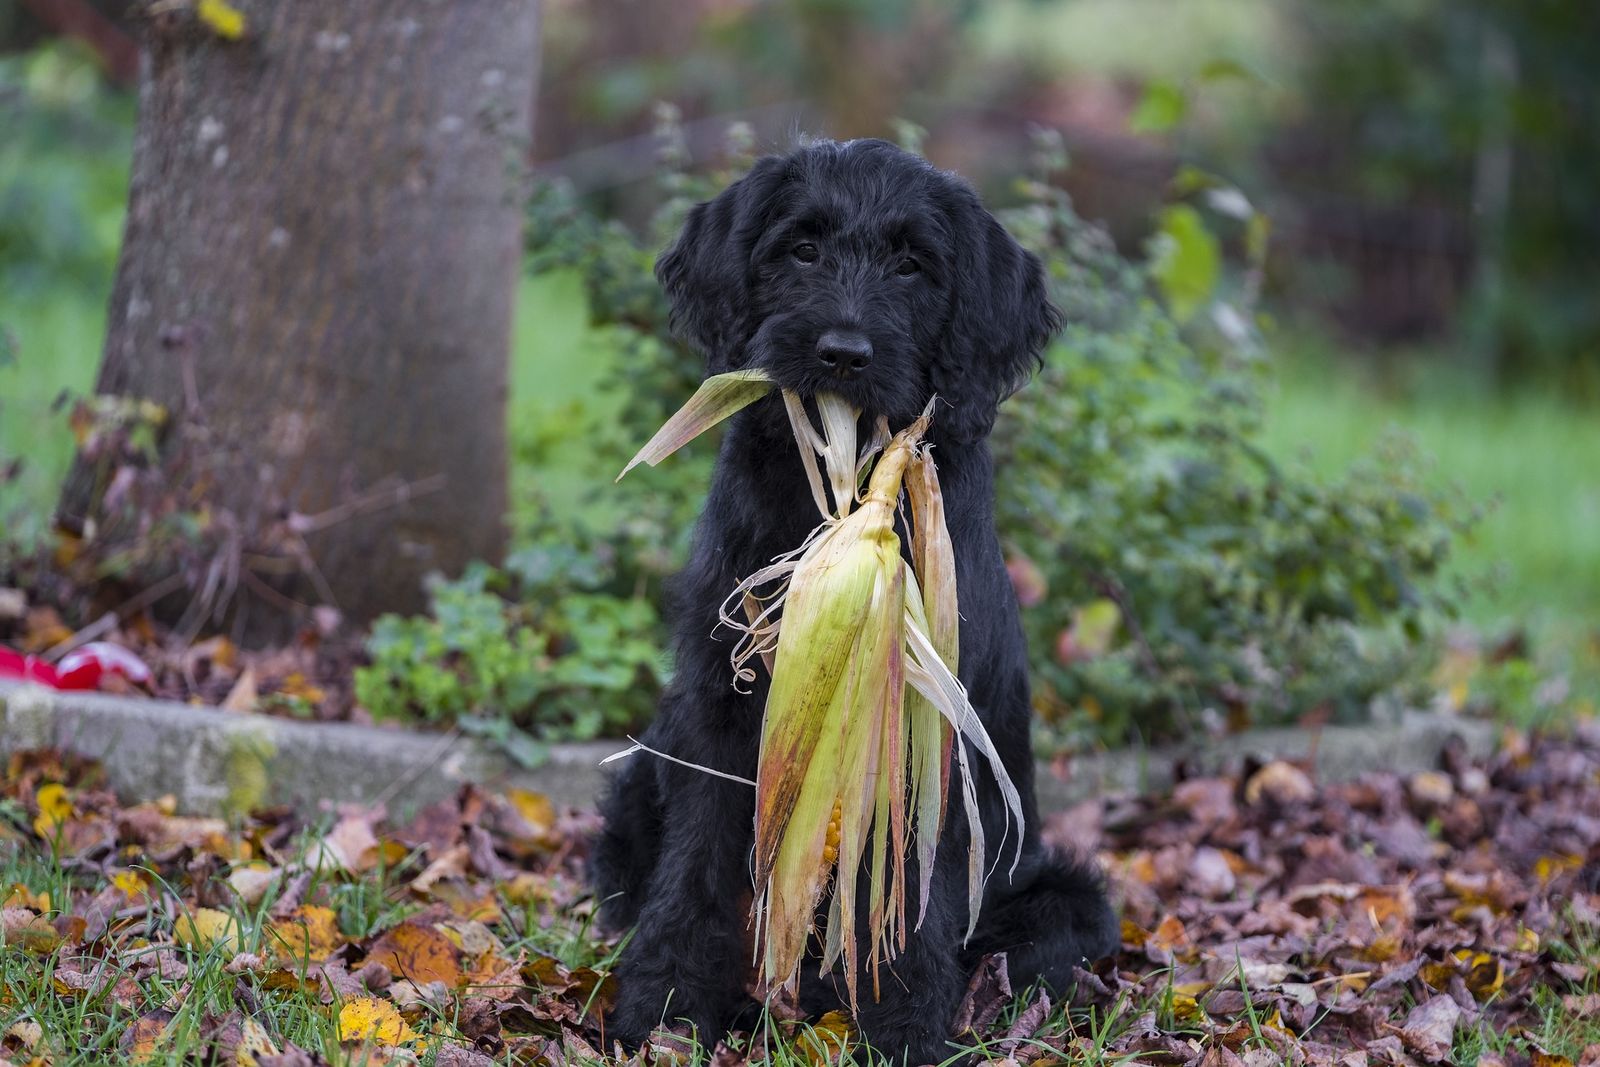 Ein schwarzer Hund sitzt mit einem frischen Maiskolben aus dem Feld vor einem Baum und schaut direkt den Betrachter an.